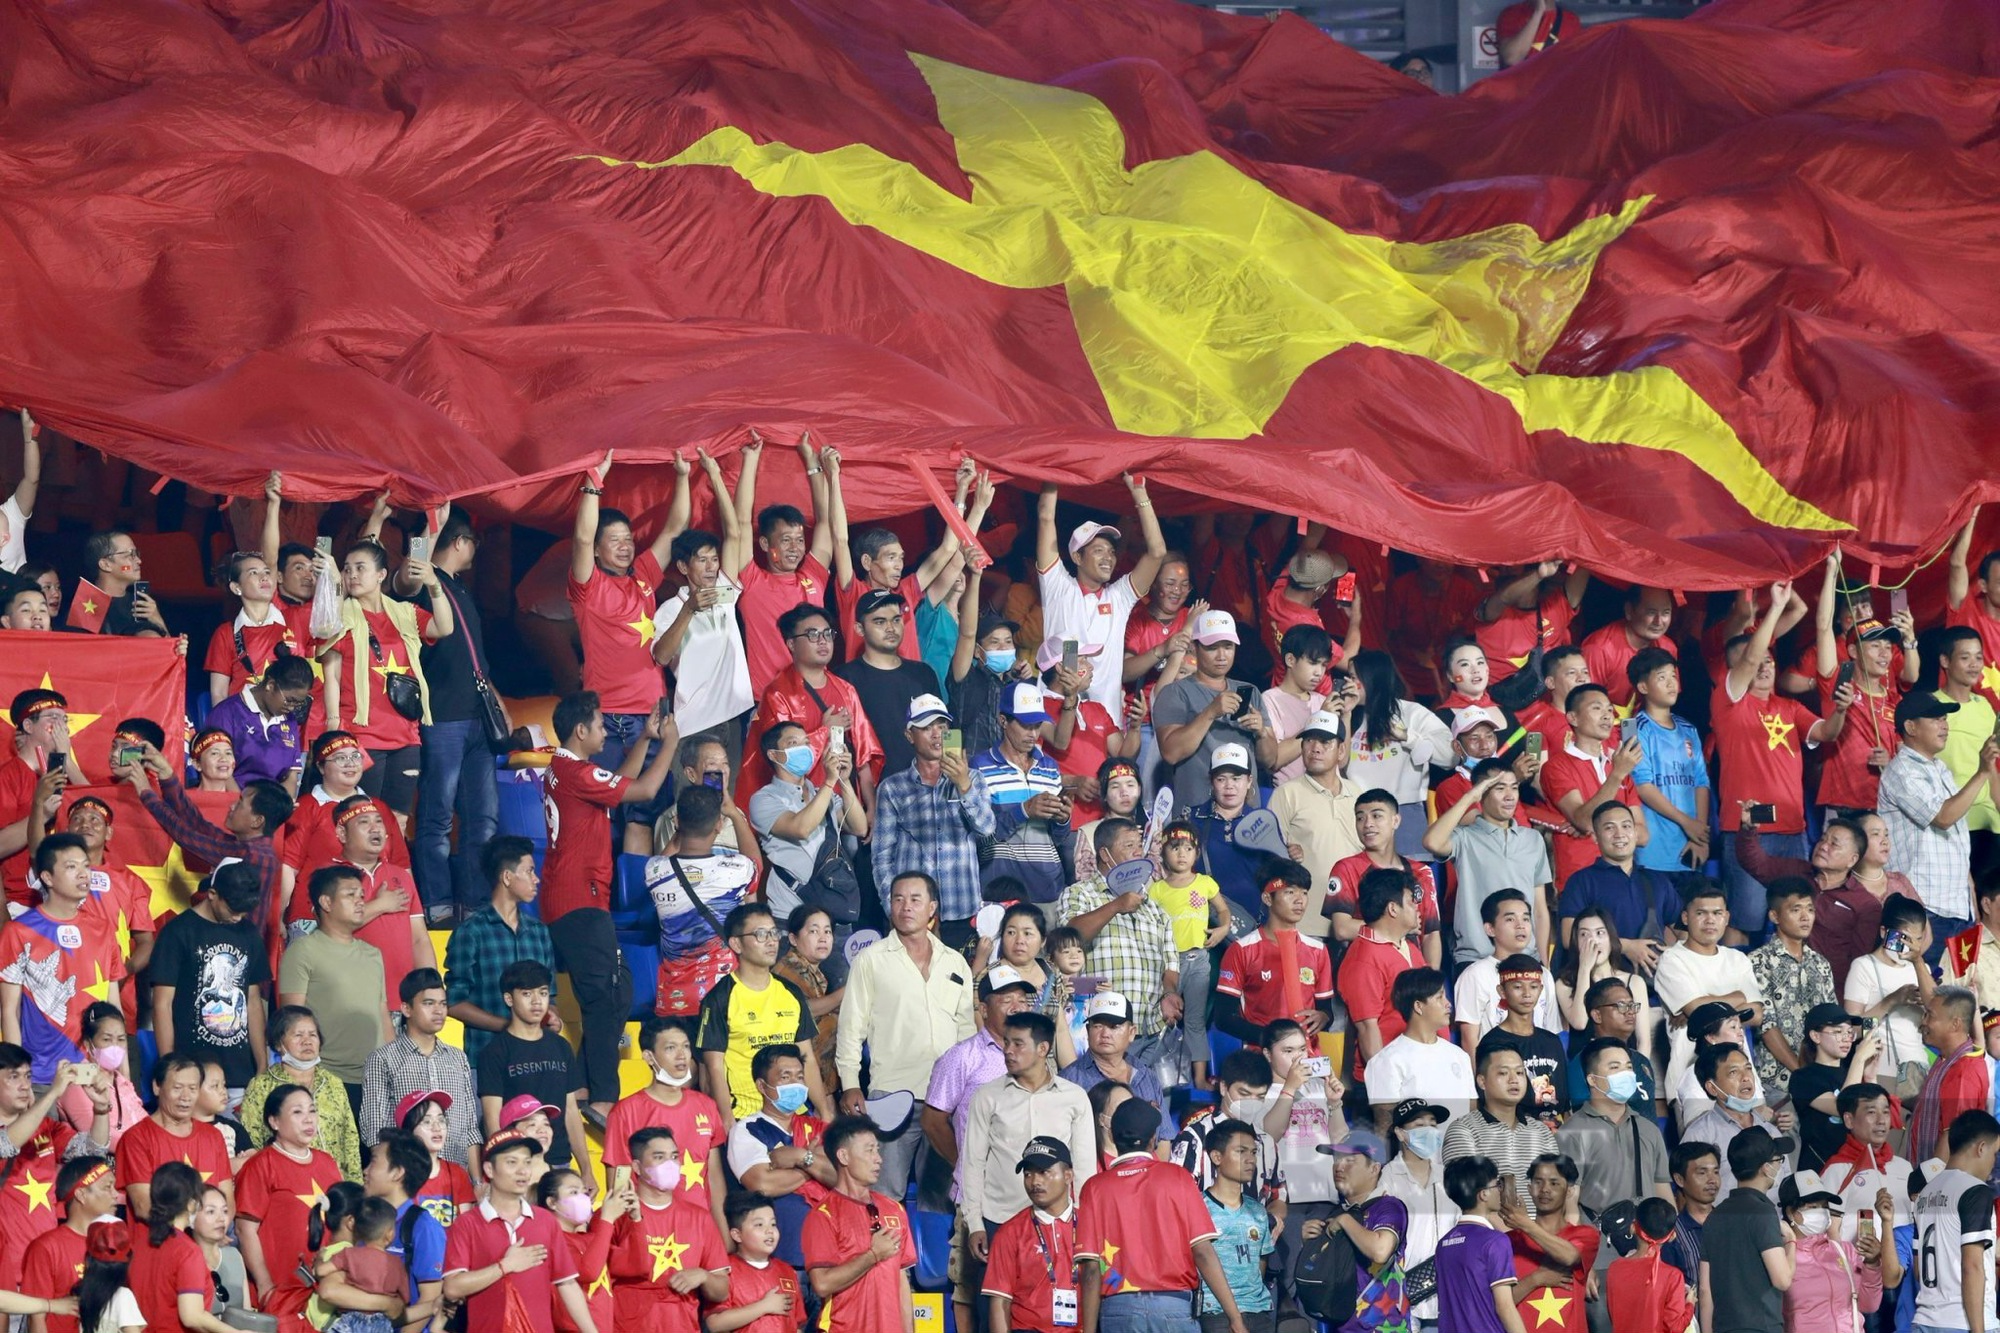 Quốc Việt ghi bàn nhân đôi tỉ số ở phút bù giờ U22 Việt Nam thắng Lào 2-0 - Ảnh 4.